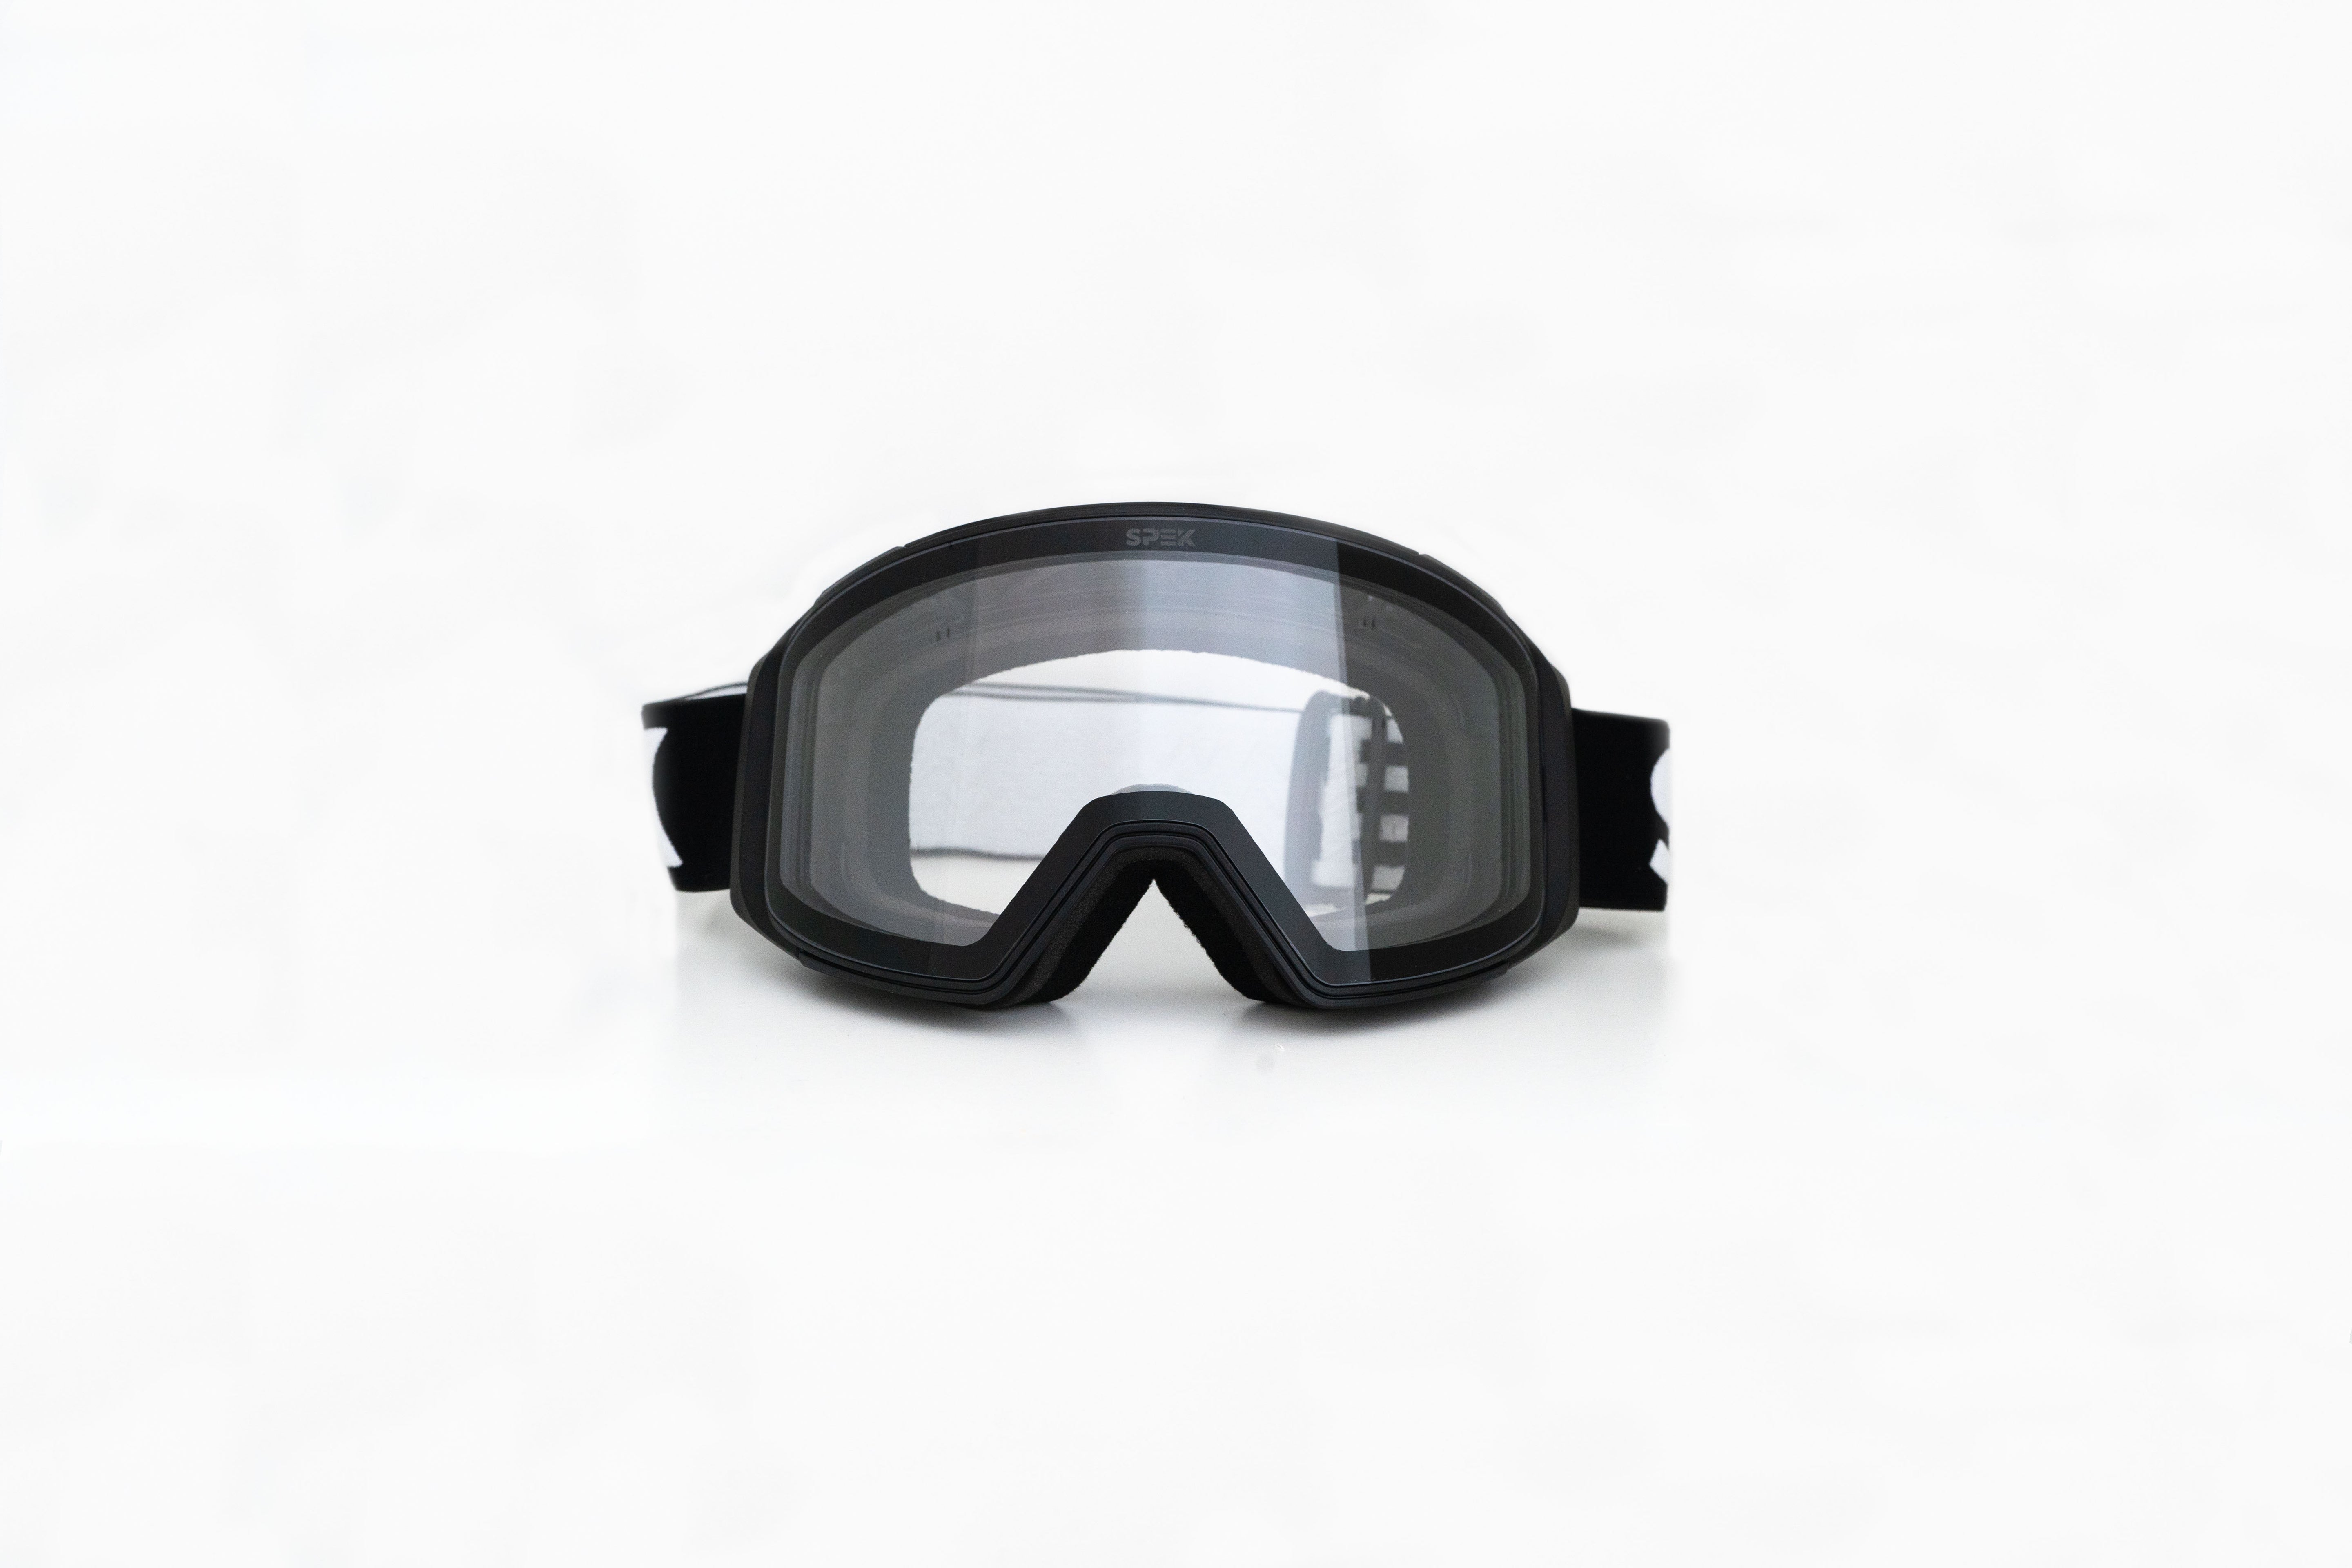 APEX lunette de ski